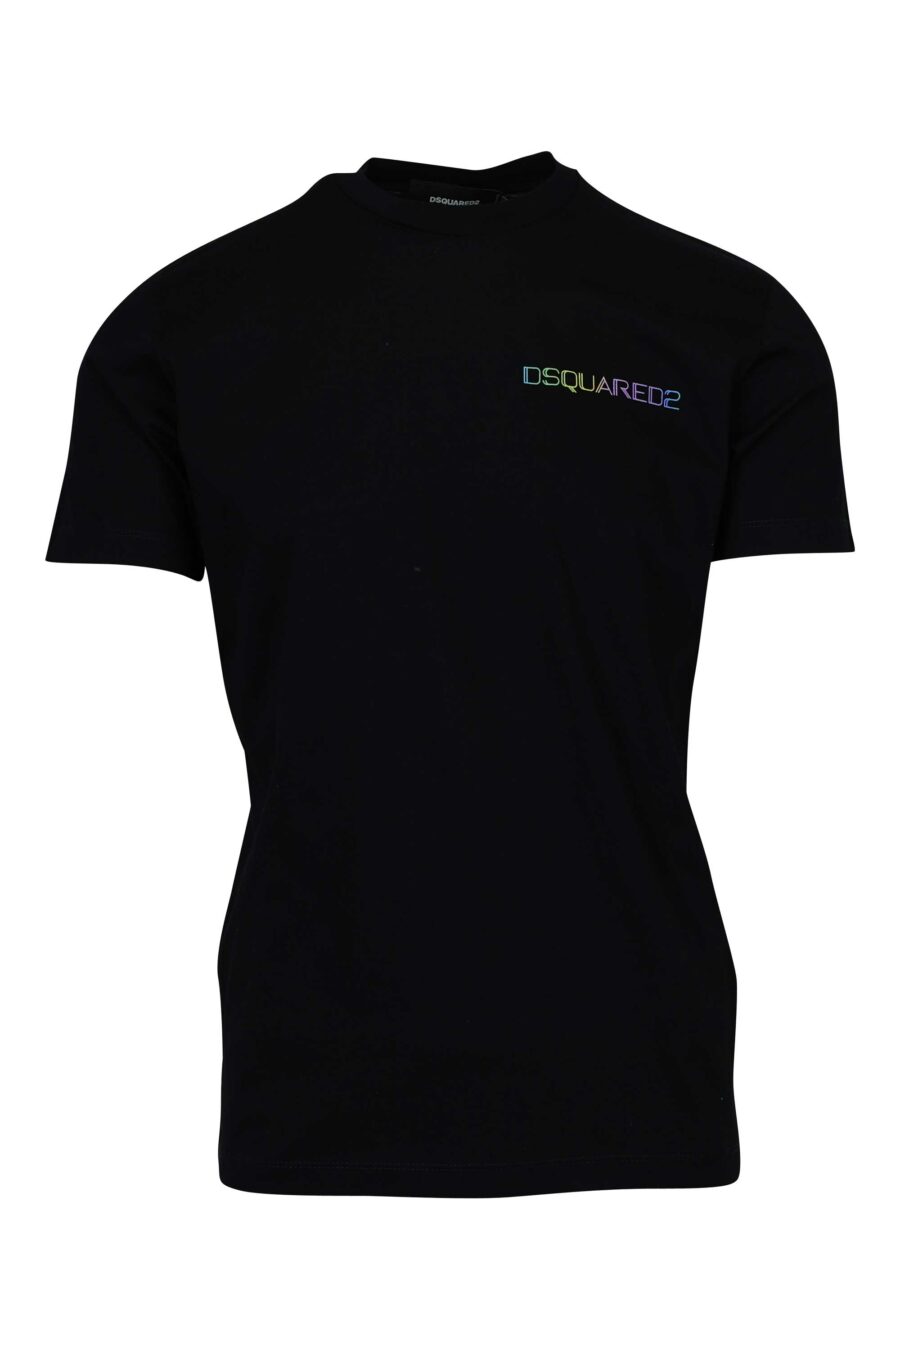 T-shirt noir avec mini-logo multicolore sur le côté - 8054148447649